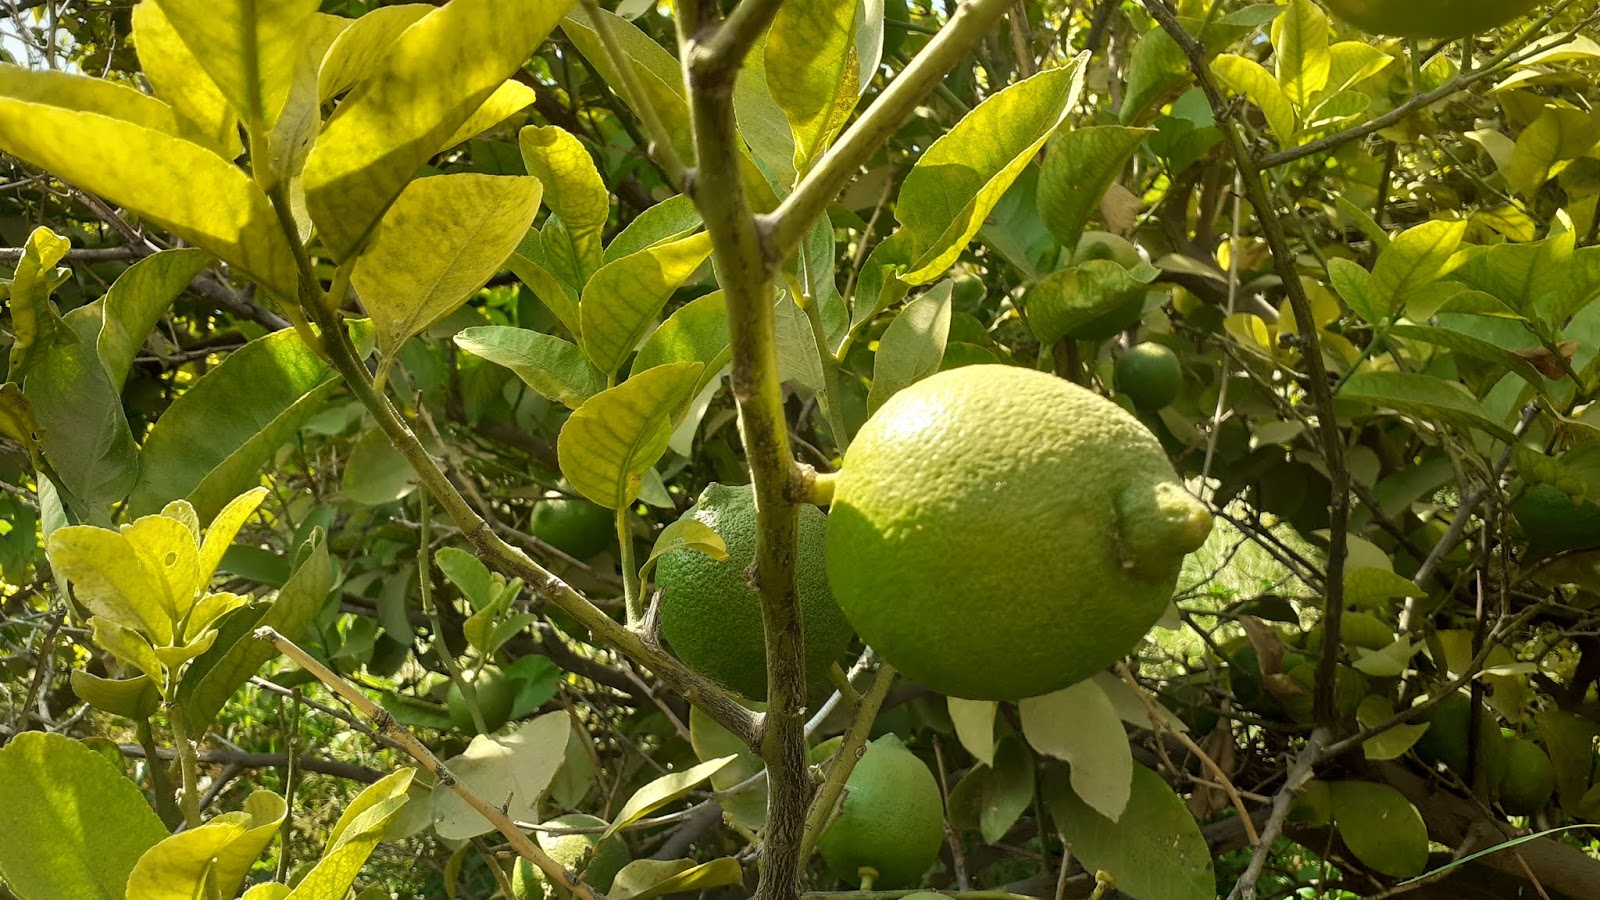 فوائد الليمون (الحامض) | فوائد الليمون السحرية لصحتك تفوق الوصف